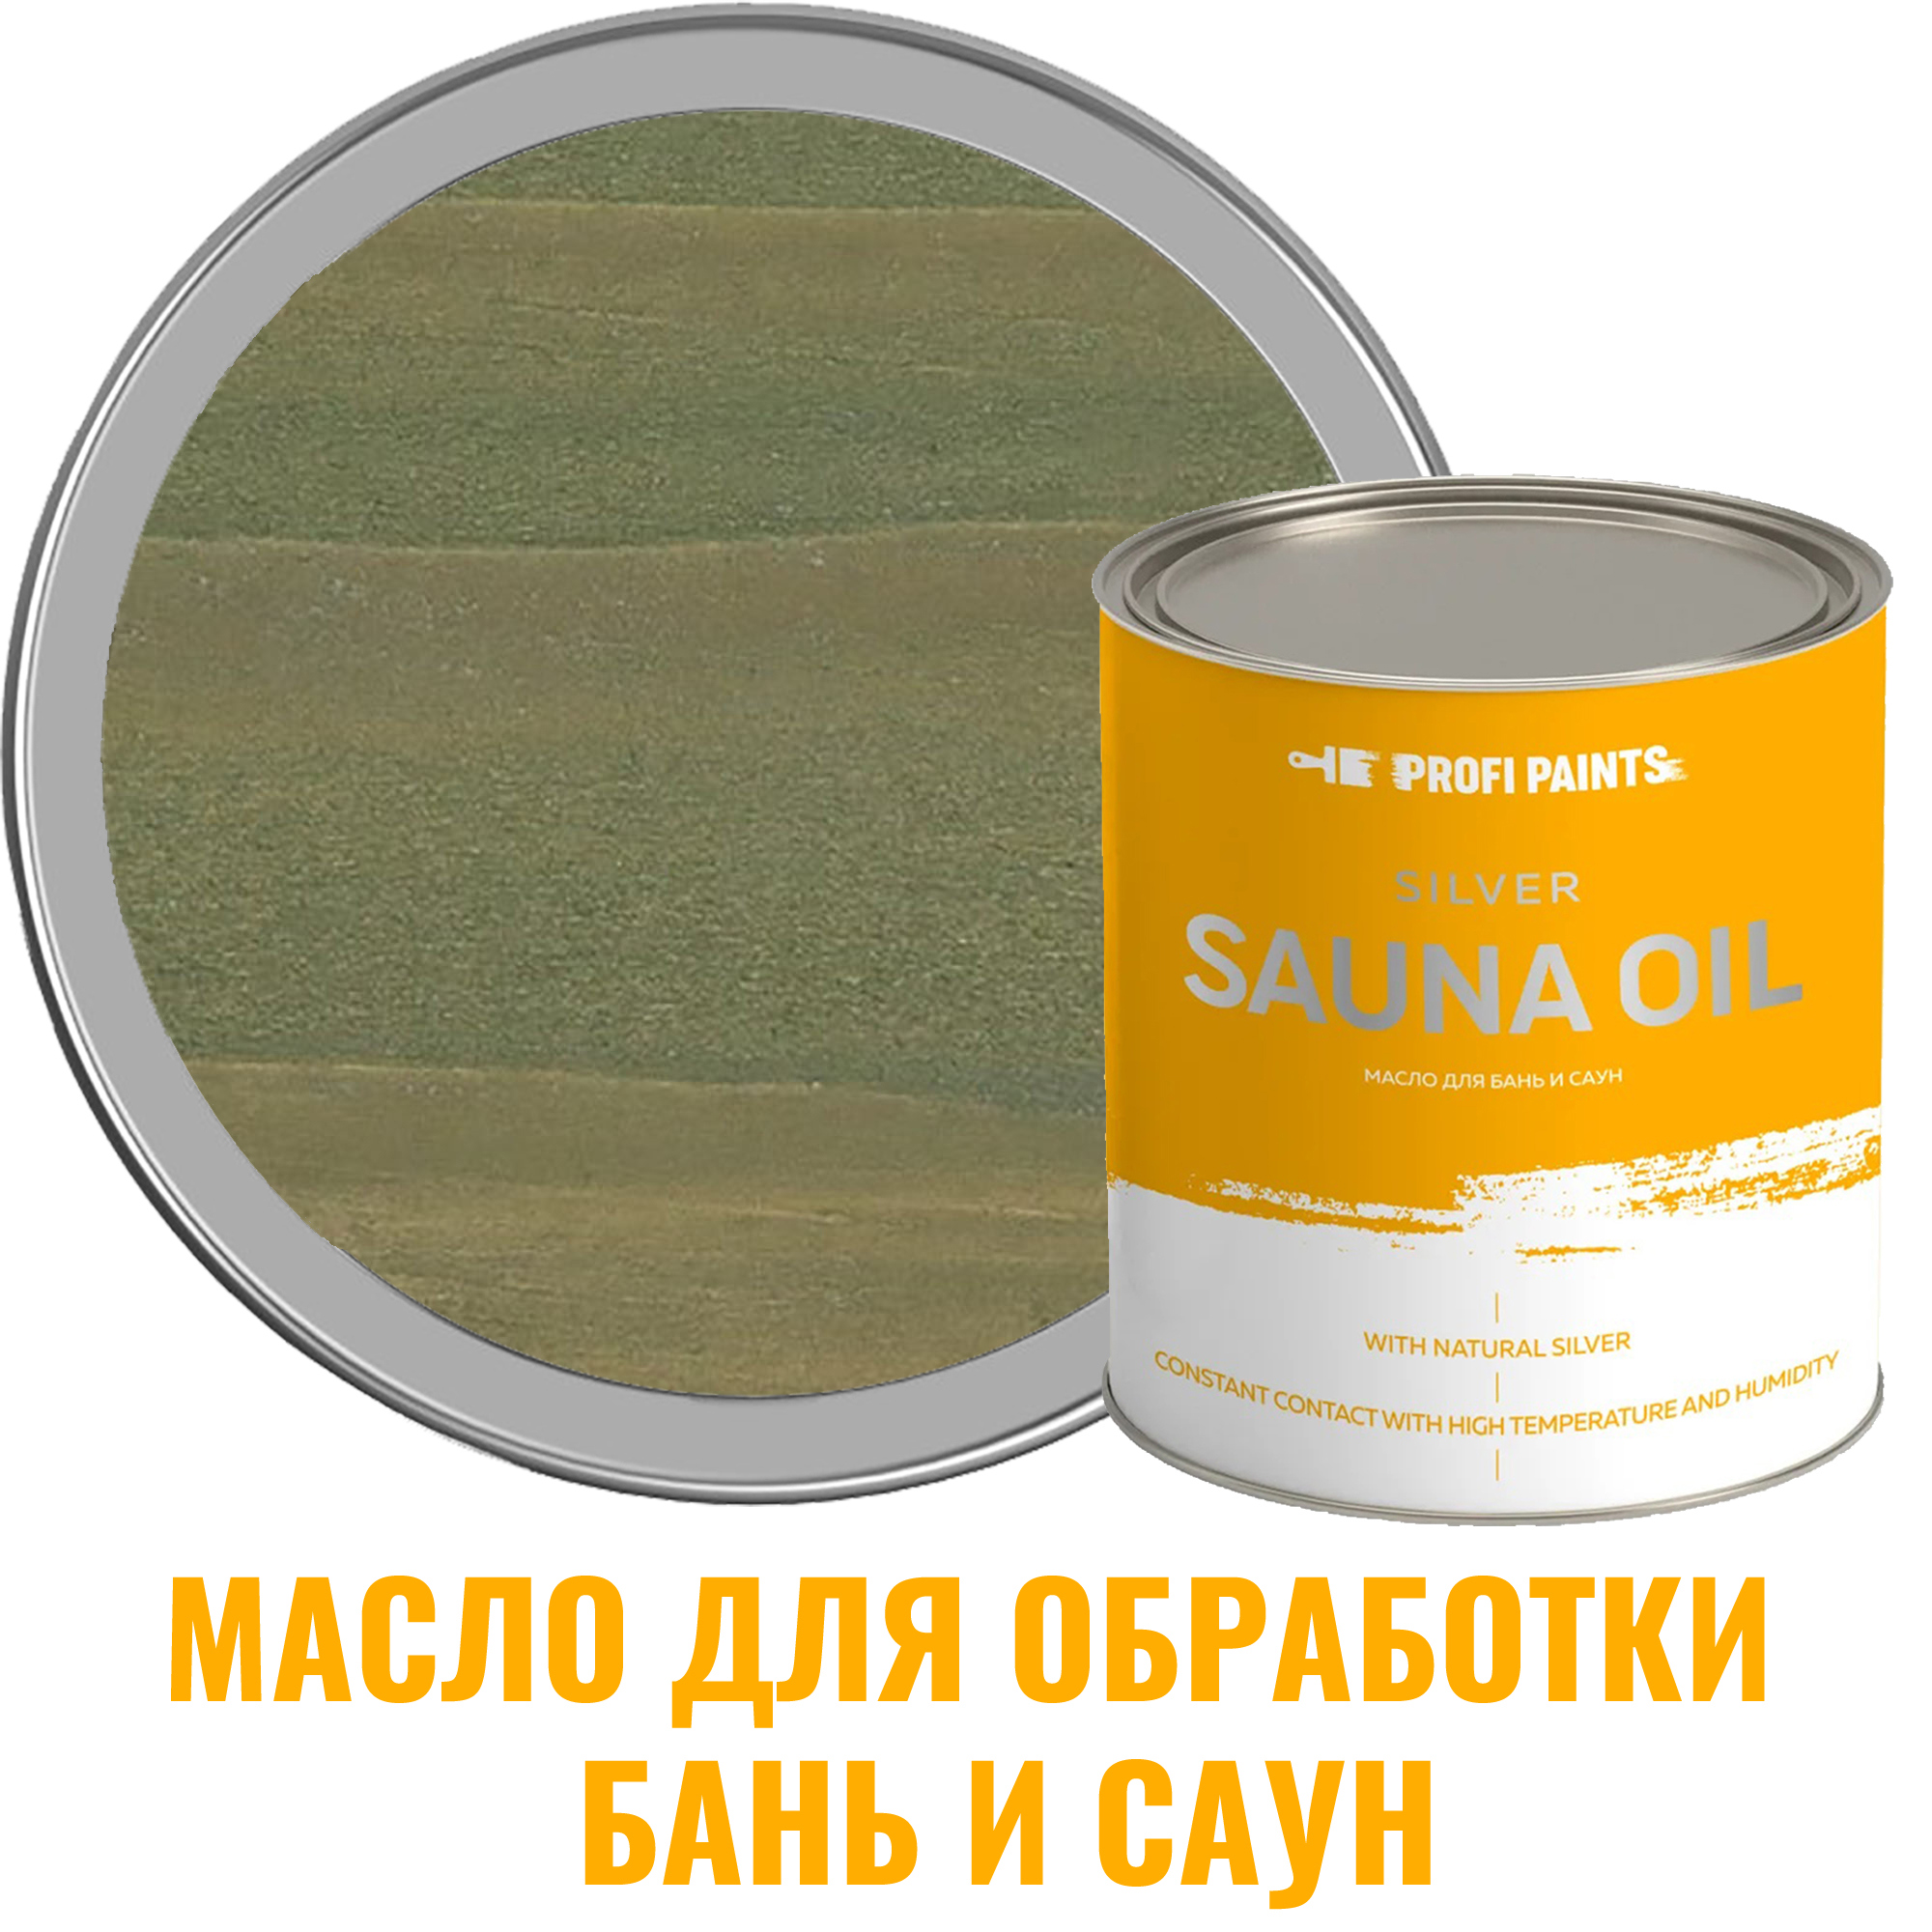 91095350 Масло для бань и саун 10786_D Silver Sauna Oil цвет зеленый 0.9 л STLM-0481714 PROFIPAINTS